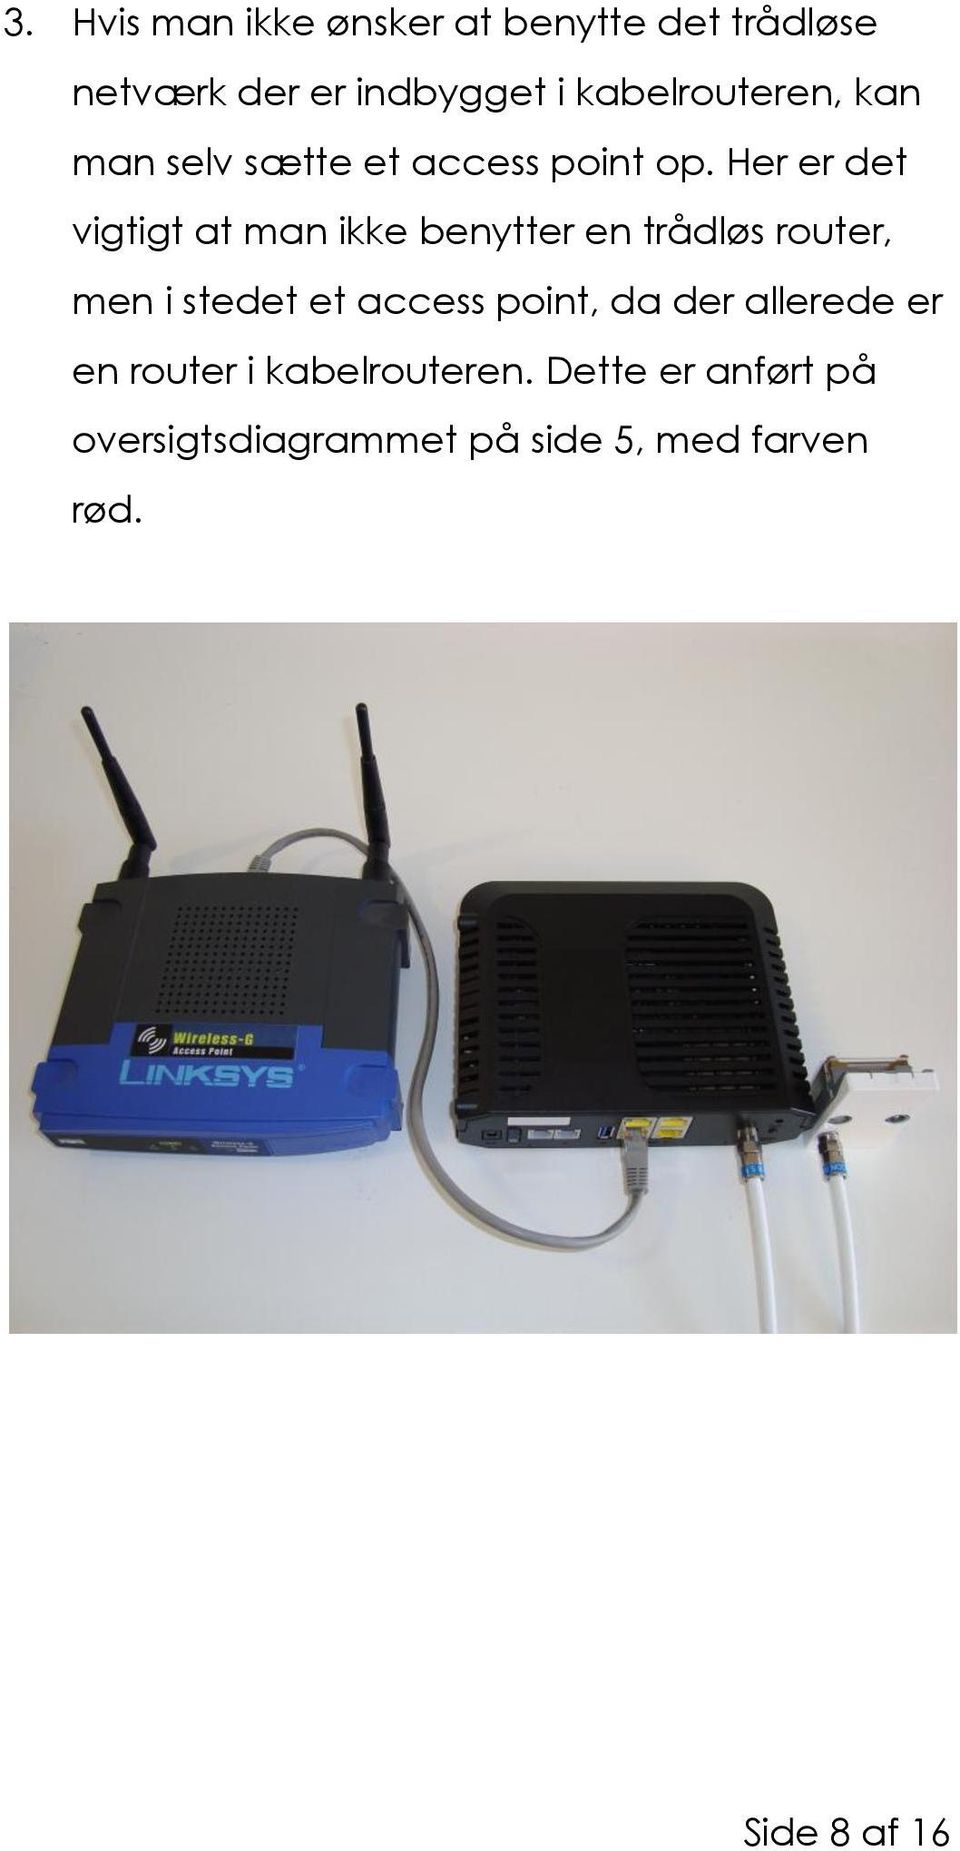 Her er det vigtigt at man ikke benytter en trådløs router, men i stedet et access